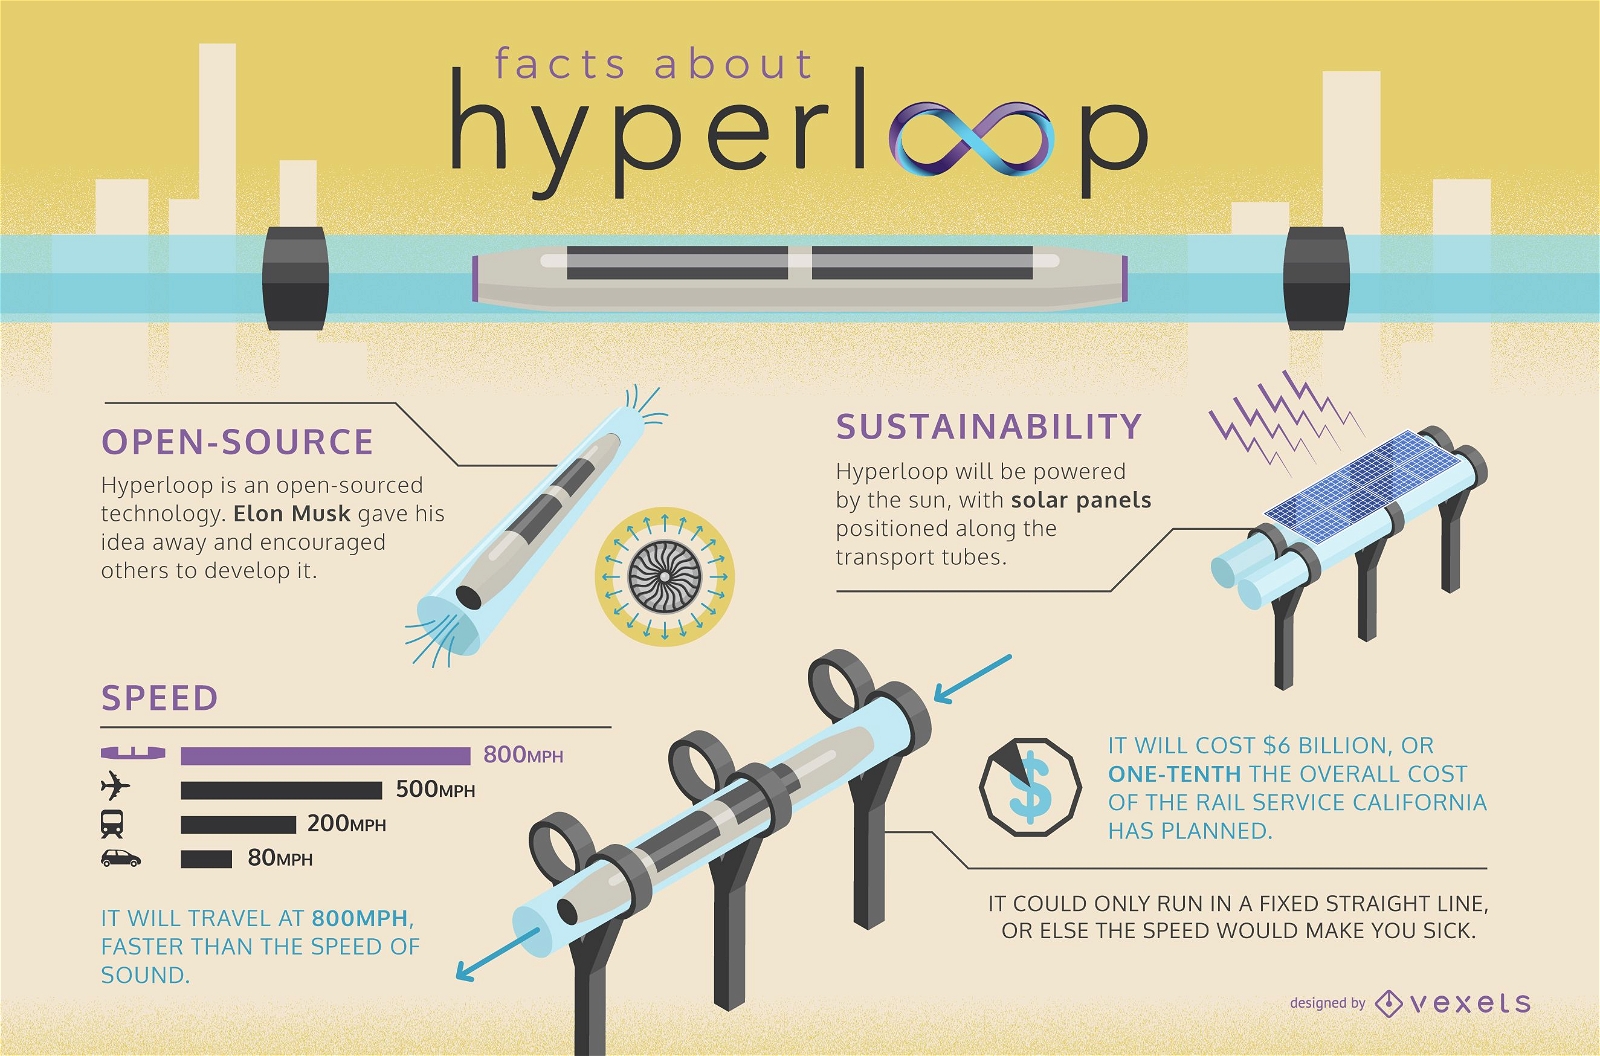 Hyperloop facts infographic